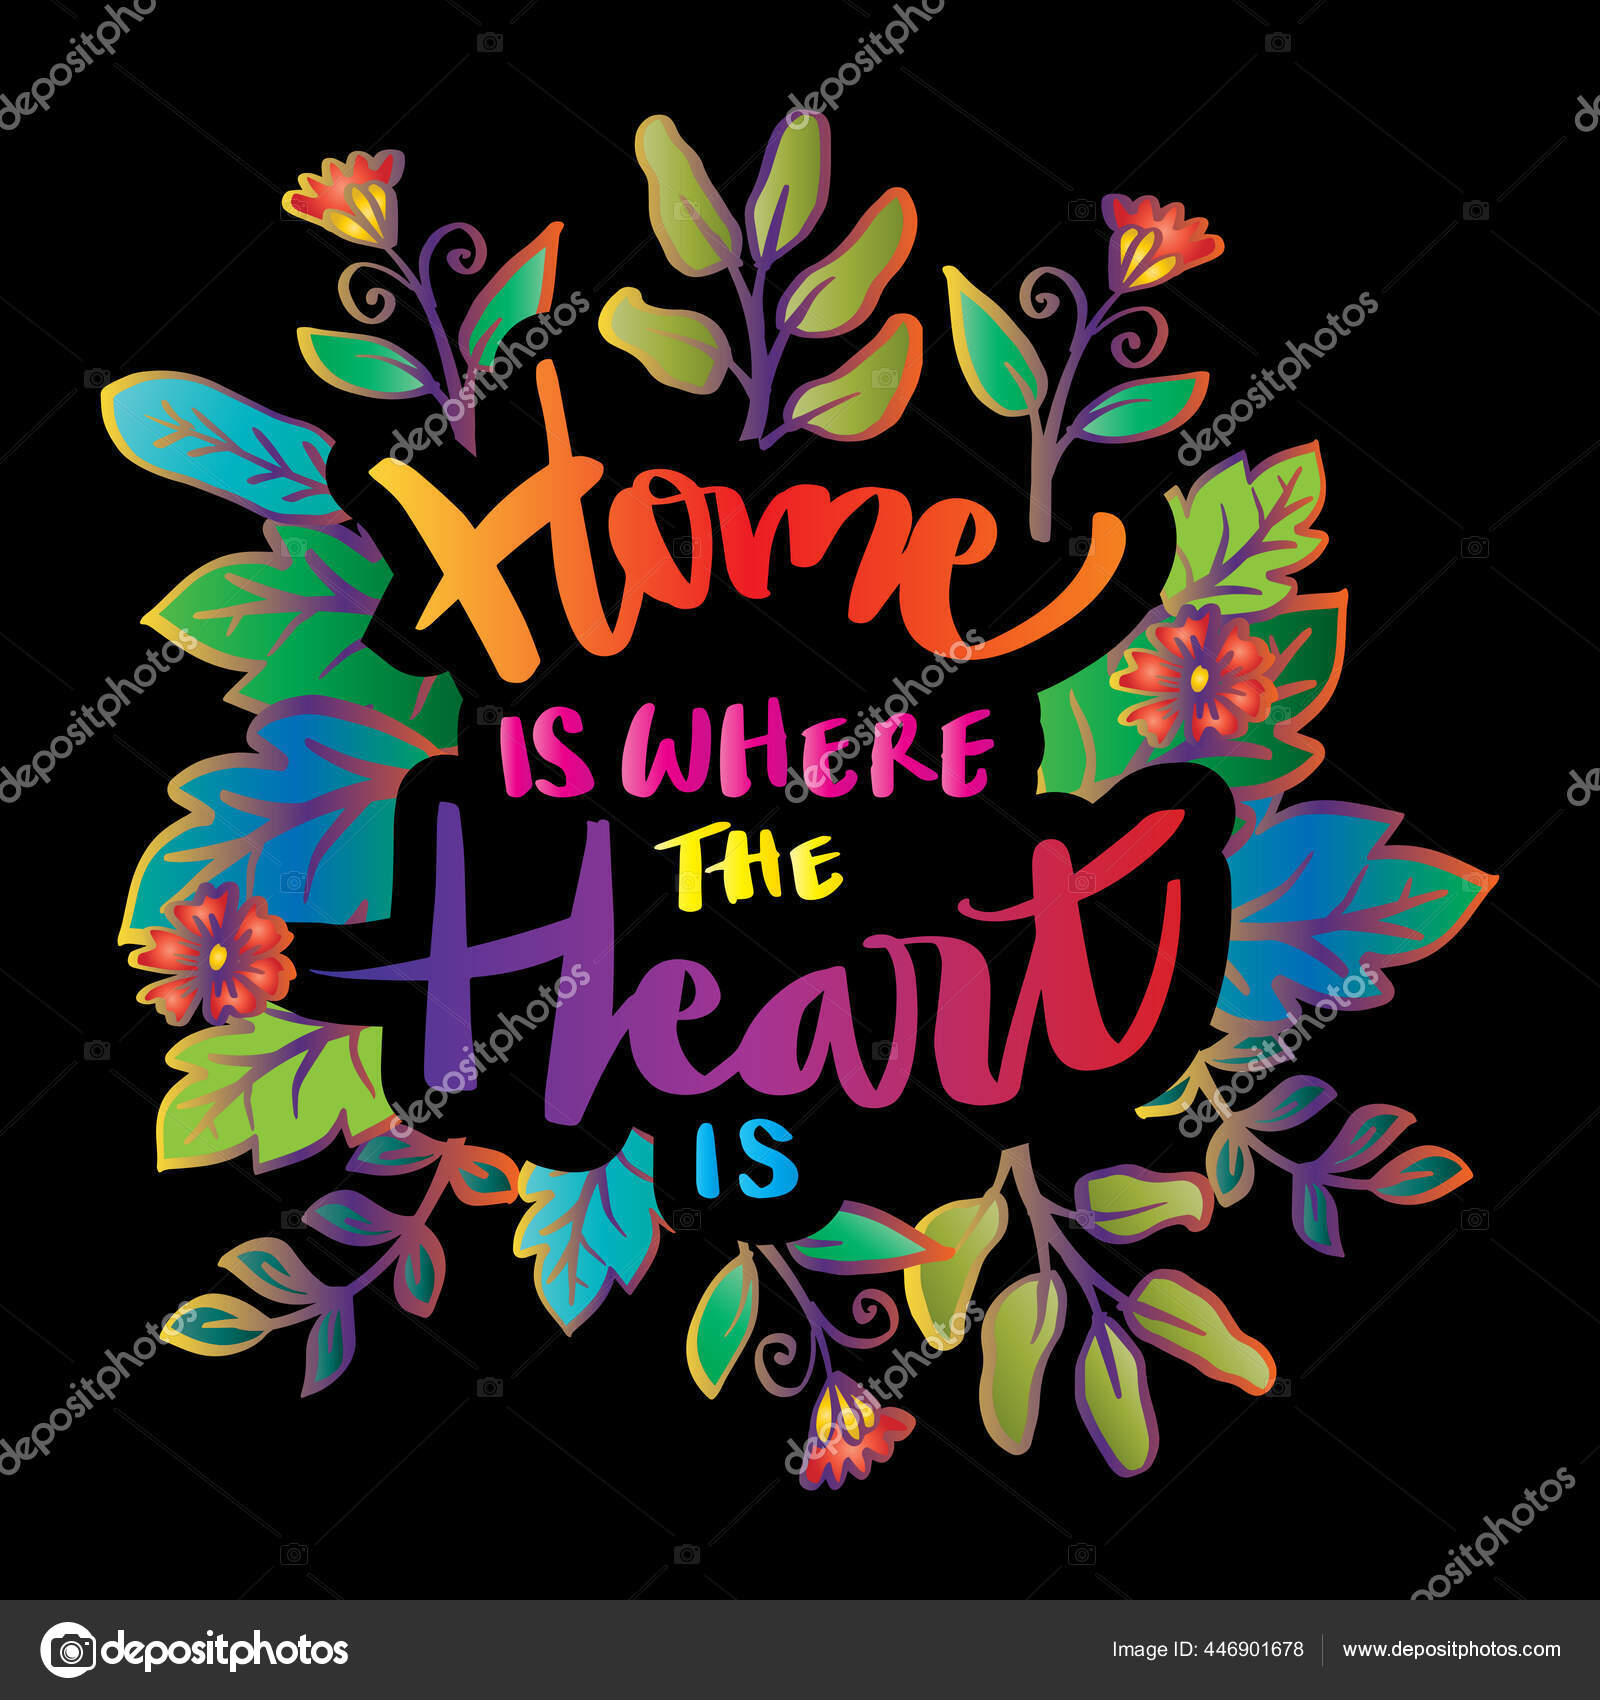 https://st2.depositphotos.com/7060376/44690/v/1600/depositphotos_446901678-stock-illustration-home-heart-hand-lettering-motivational.jpg